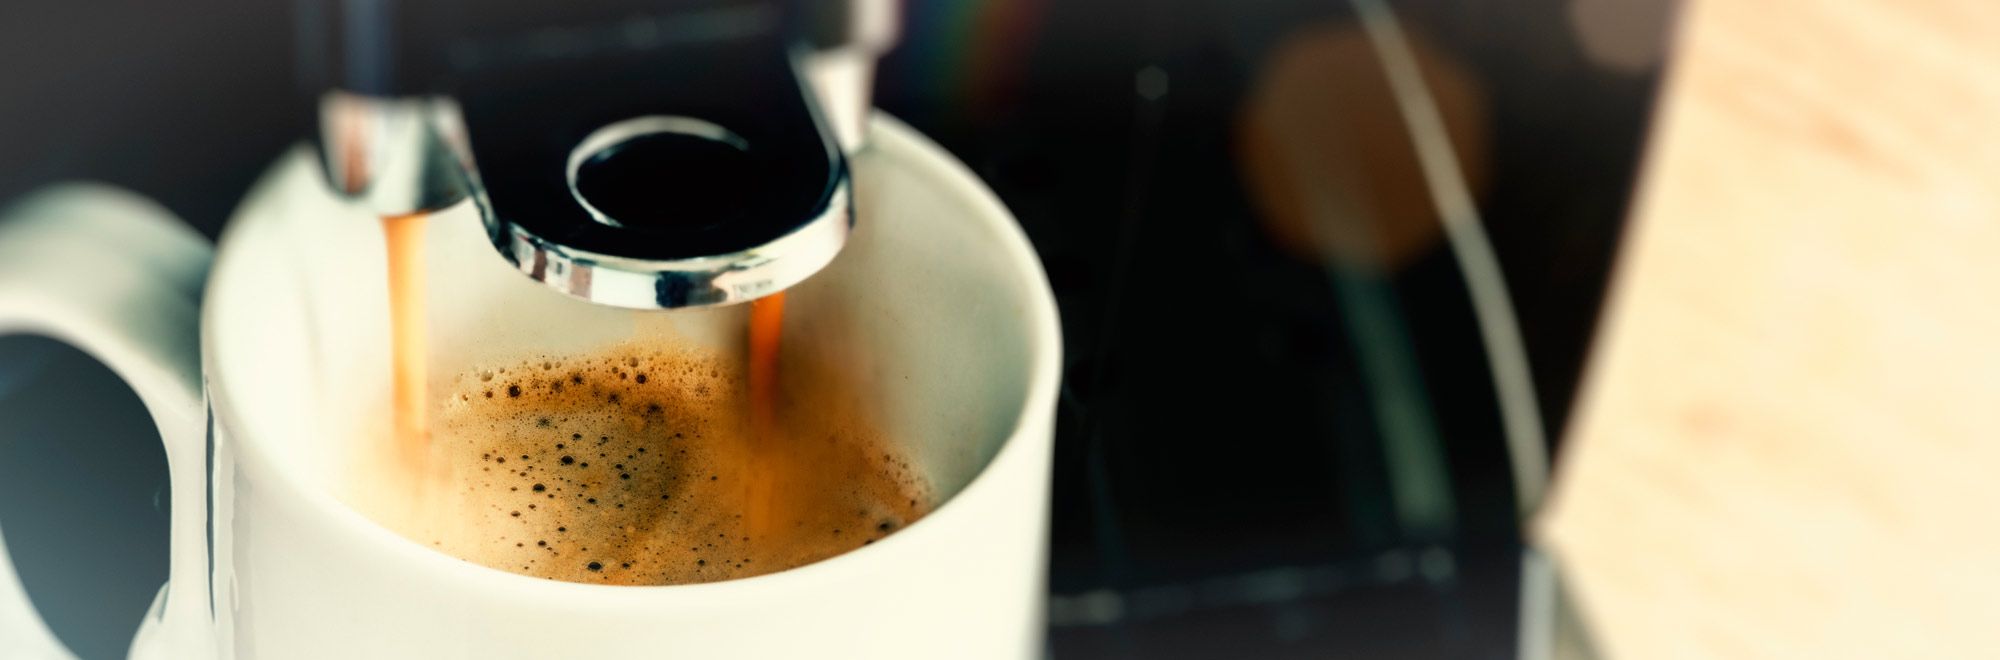 Kaffee aus dem Kaffeeautomaten